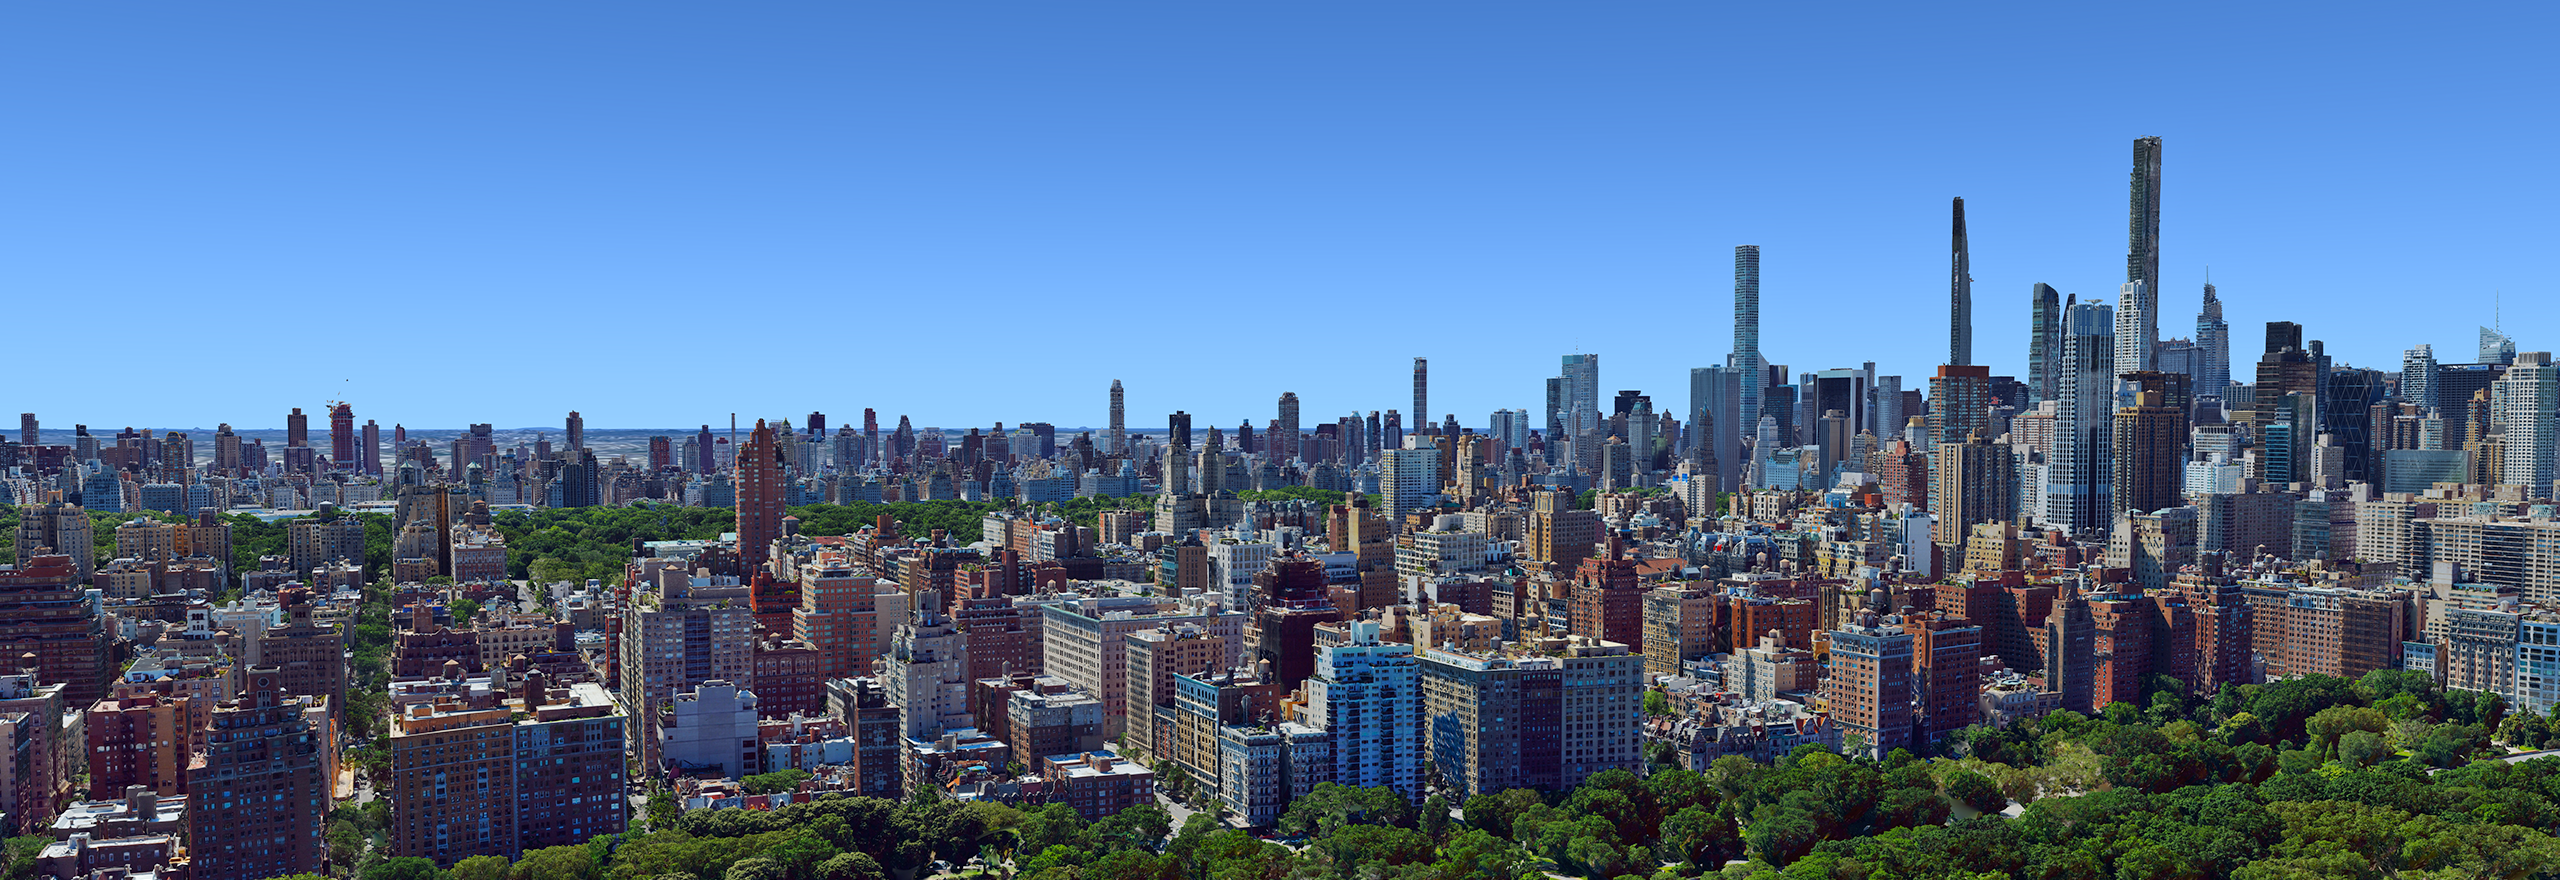 Aerial mesh 3D model of New York City